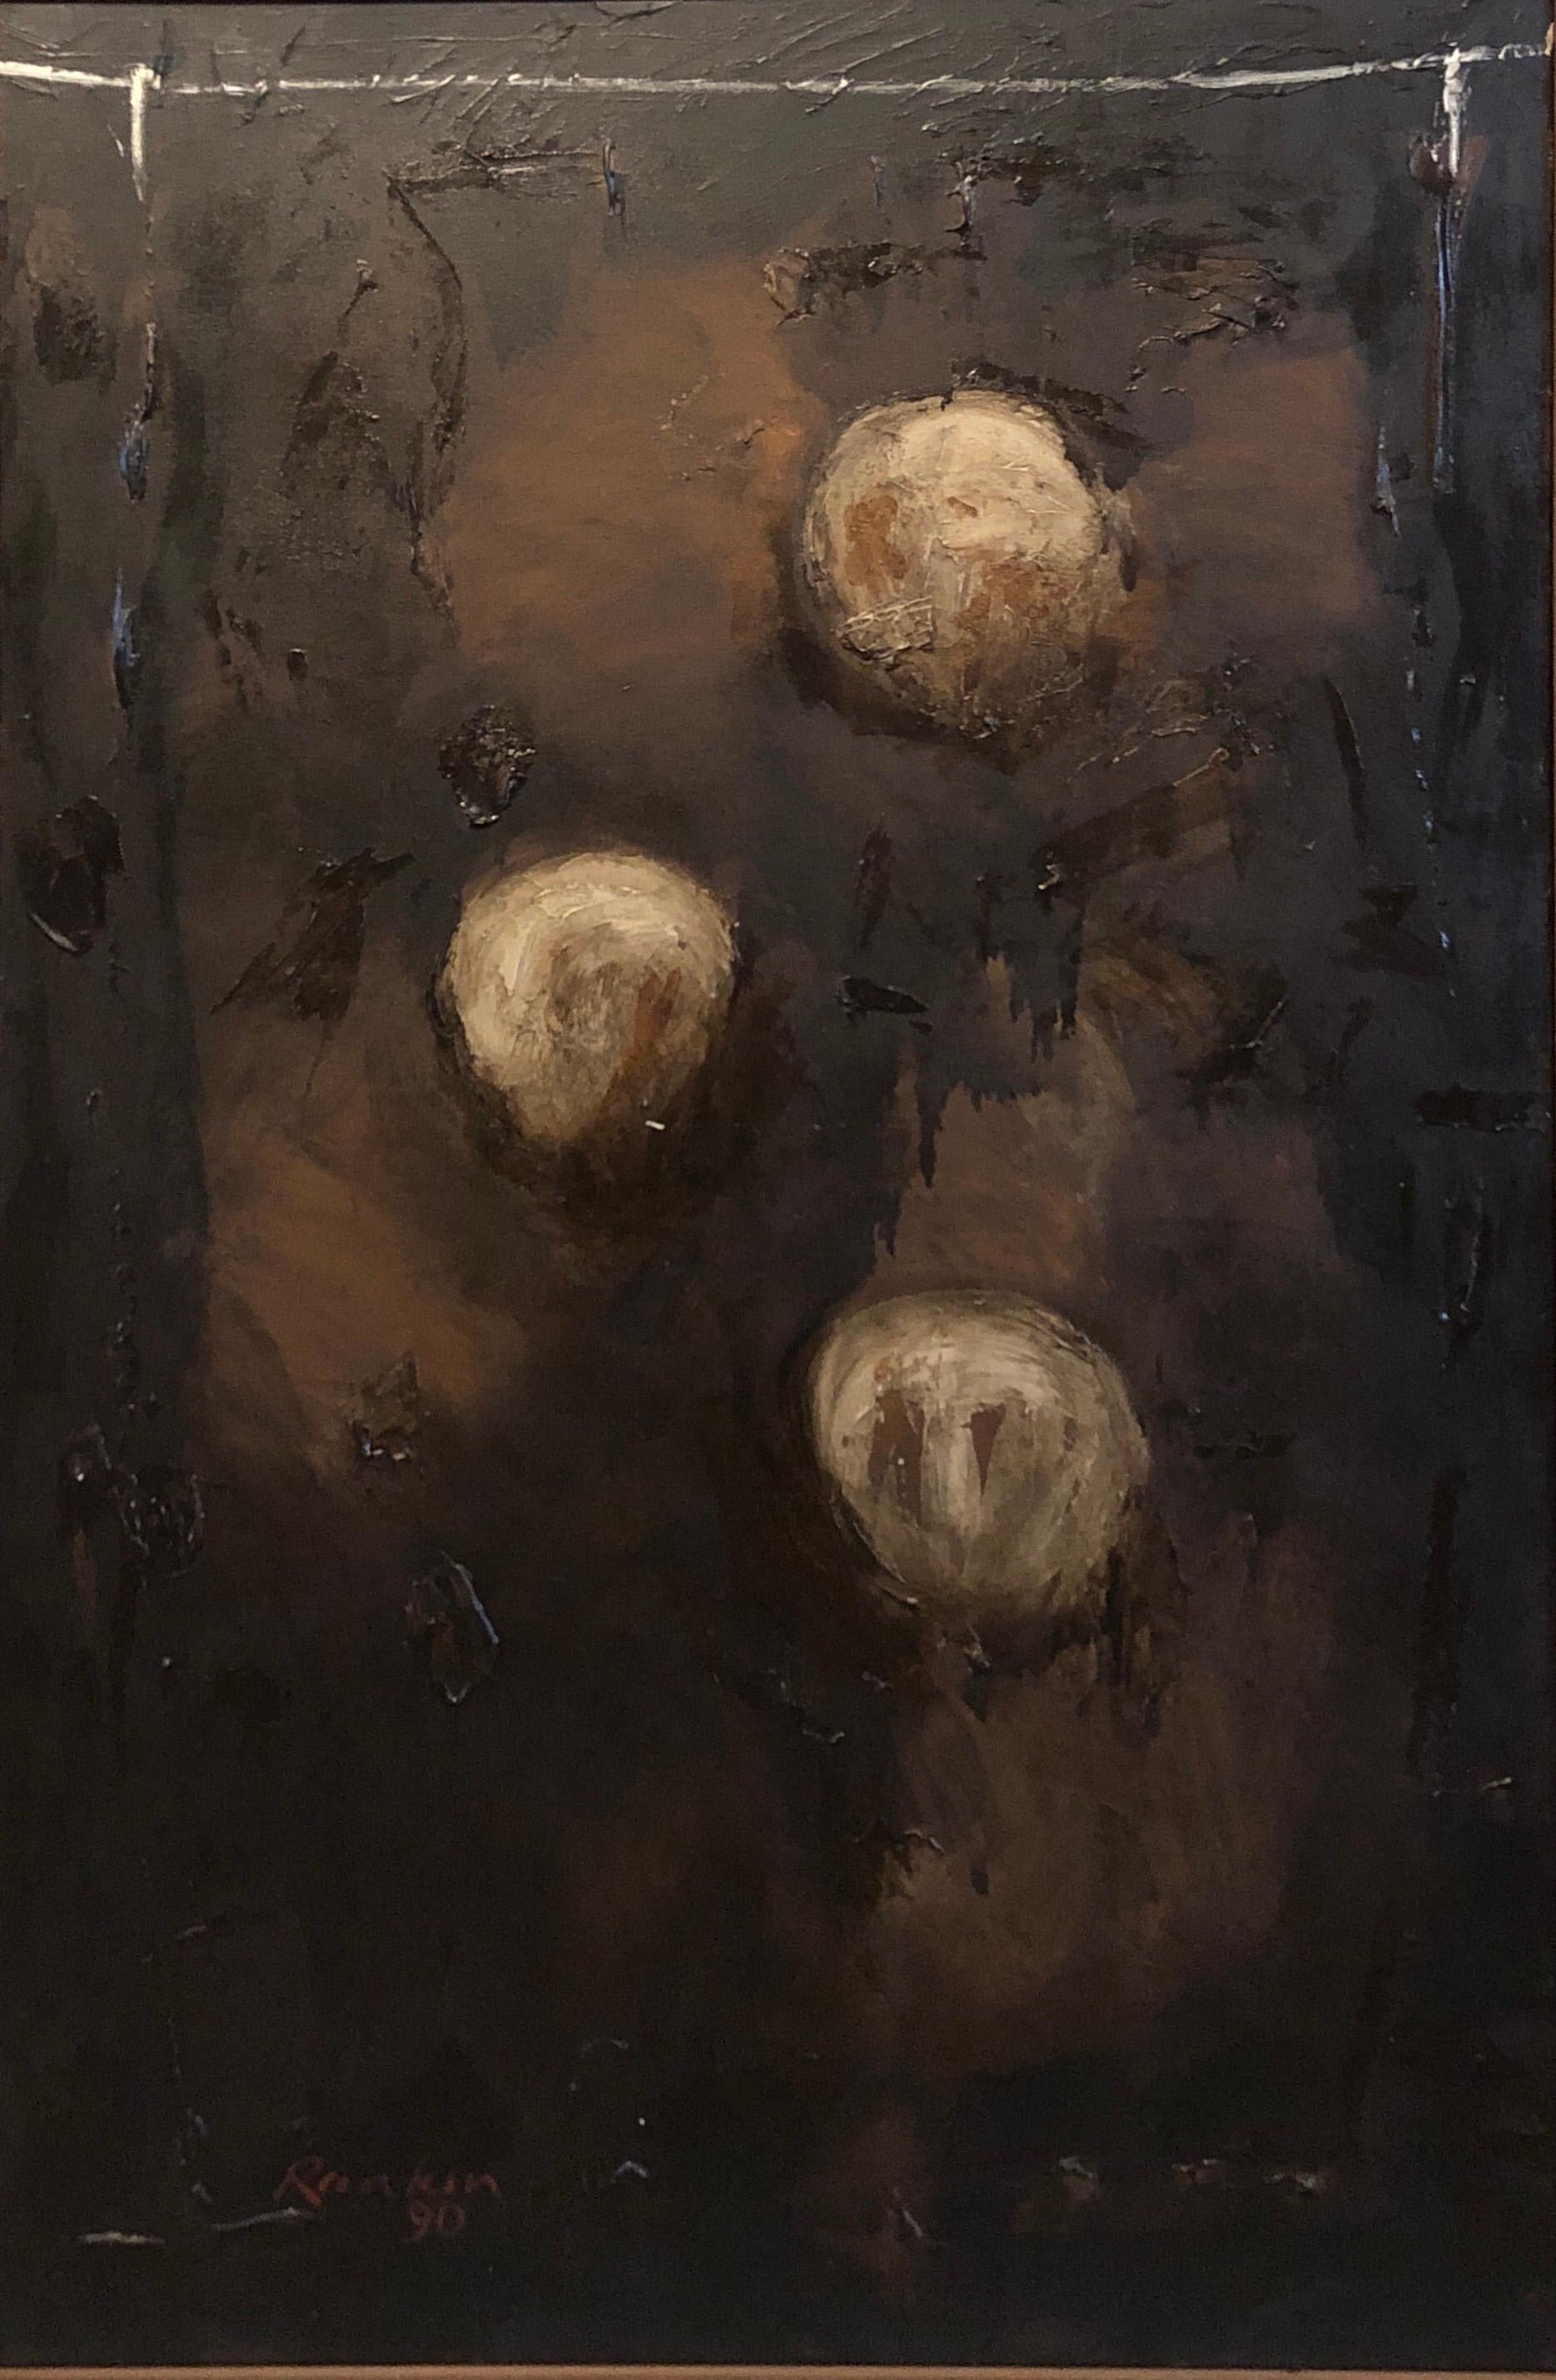 Abstrakt-expressionistisches australisches Ölgemälde (Abstrakter Expressionismus), Painting, von David Rankin